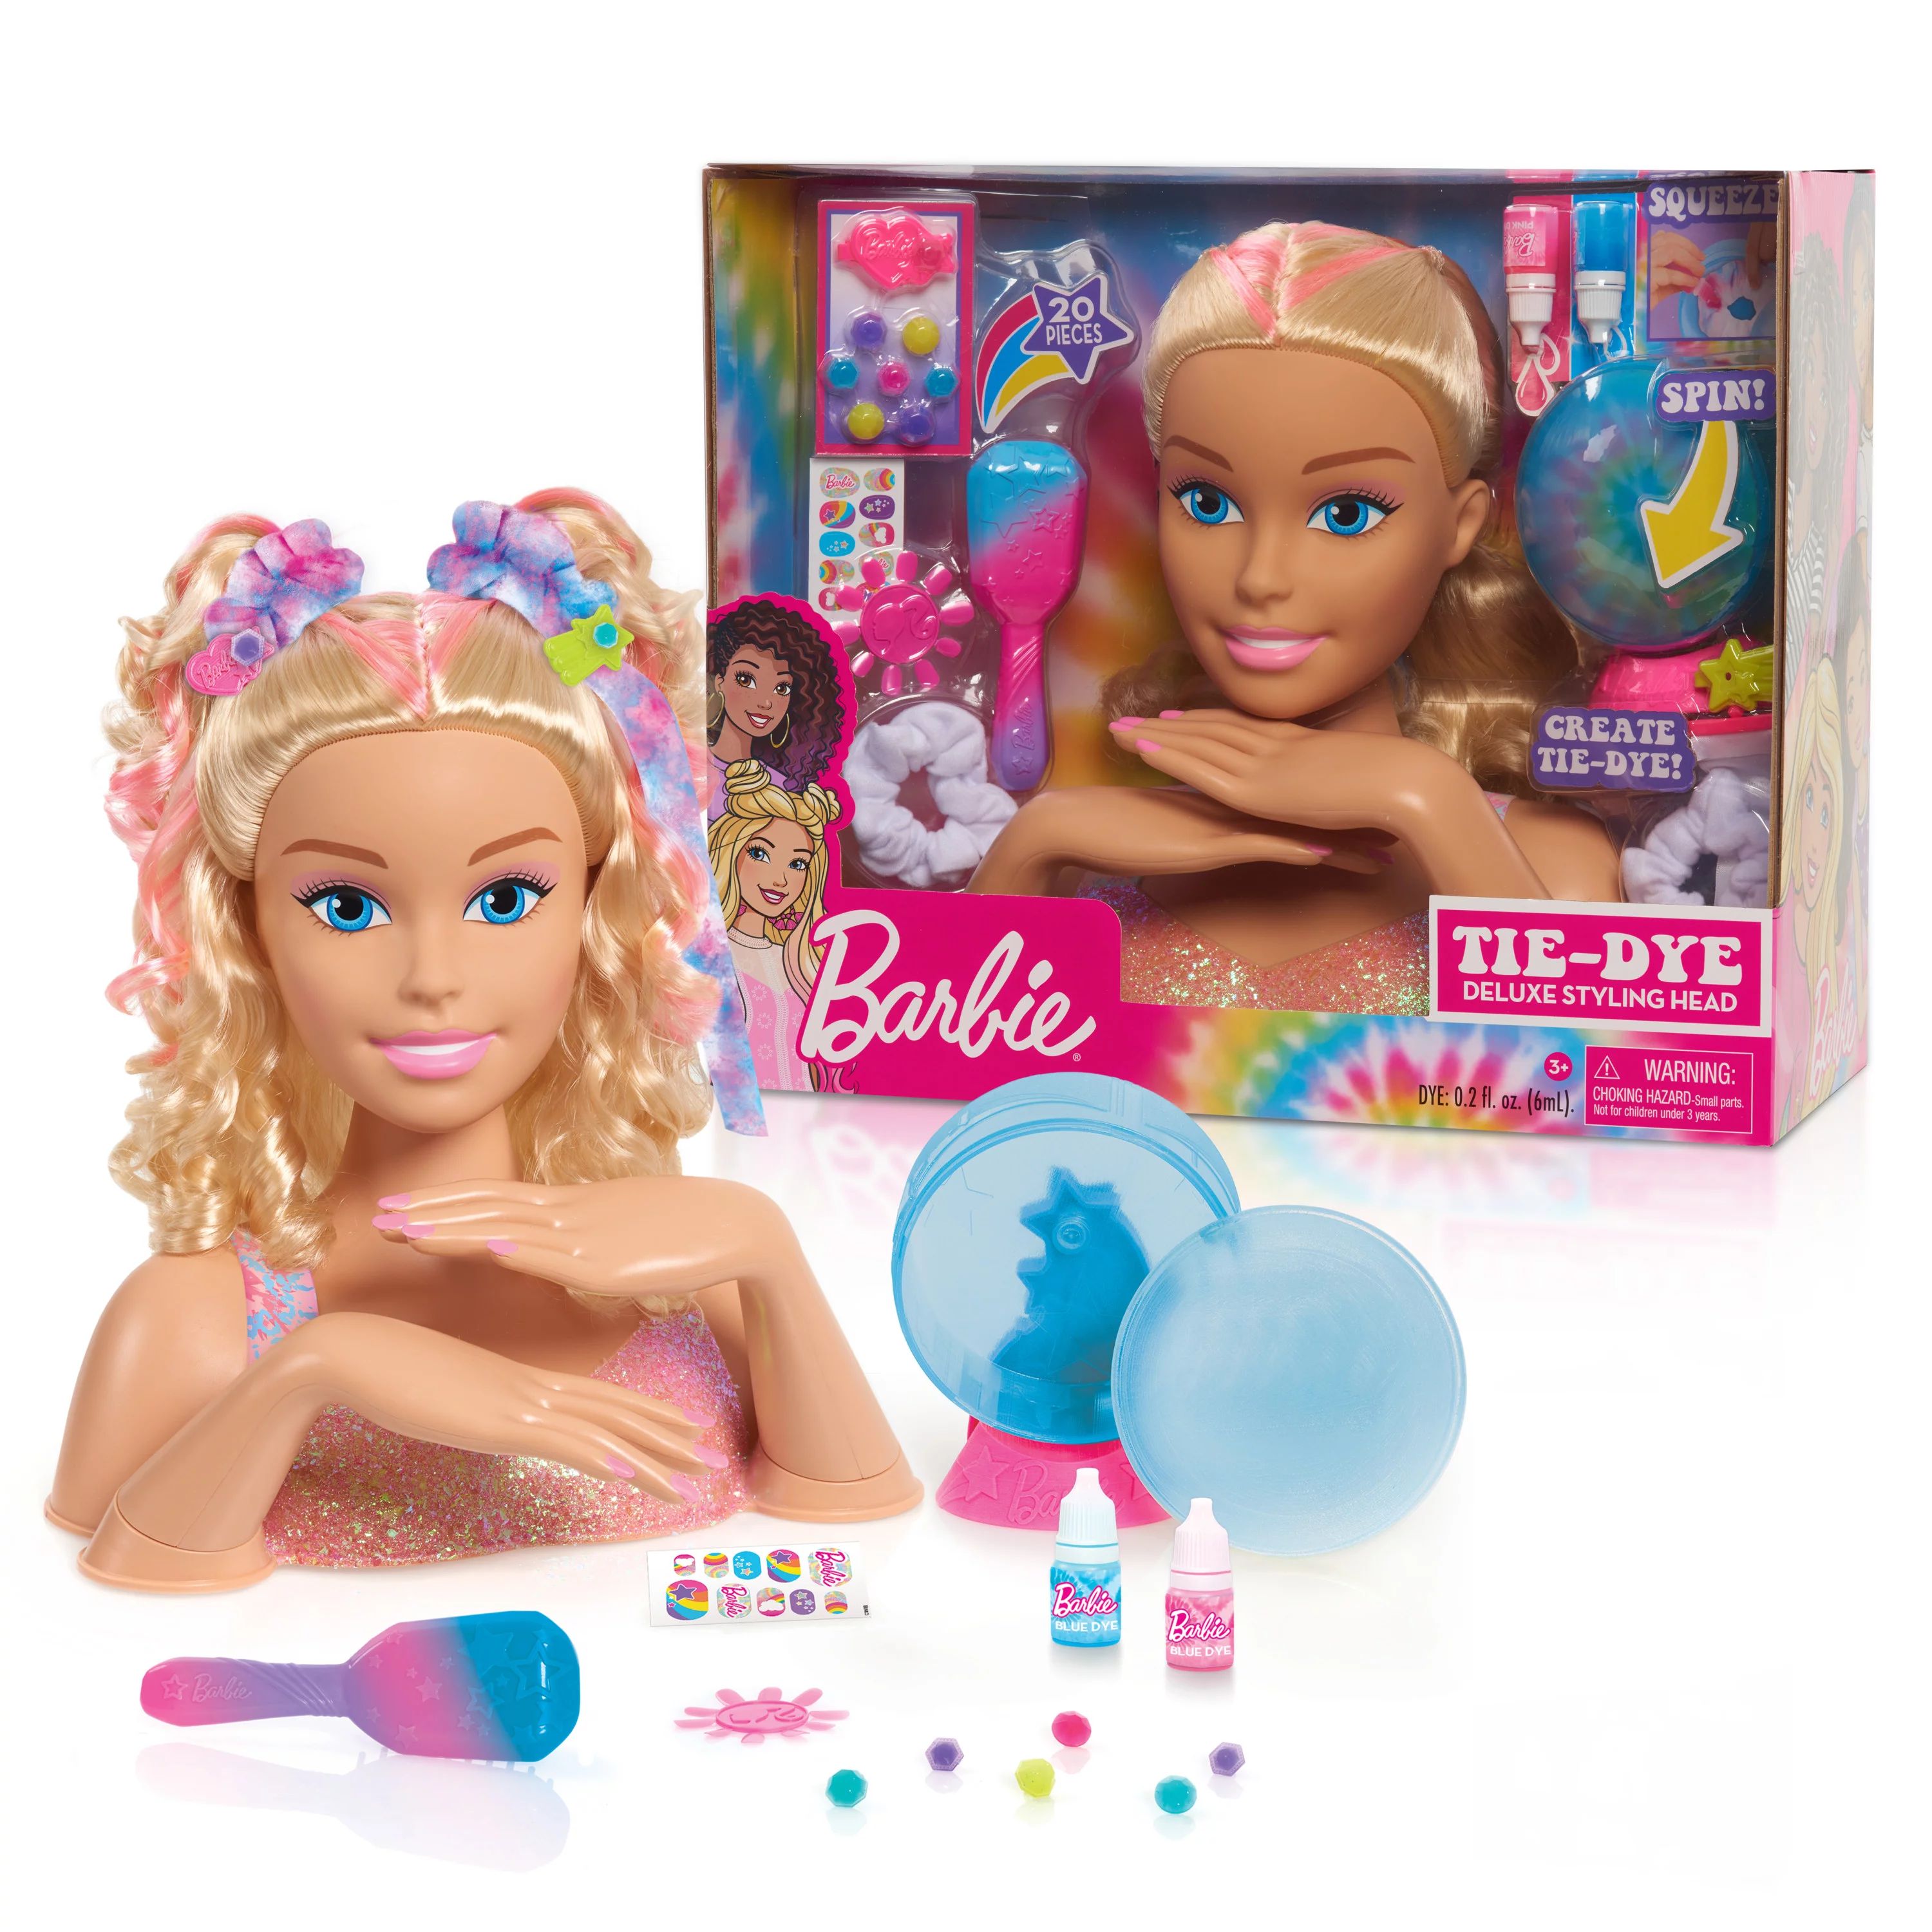 Barbie Tie-Dye Deluxe 22-Piece Styling Head, Blonde Hair, Includes 2 Non-Toxic Dye Colors, Presch... | Walmart (US)